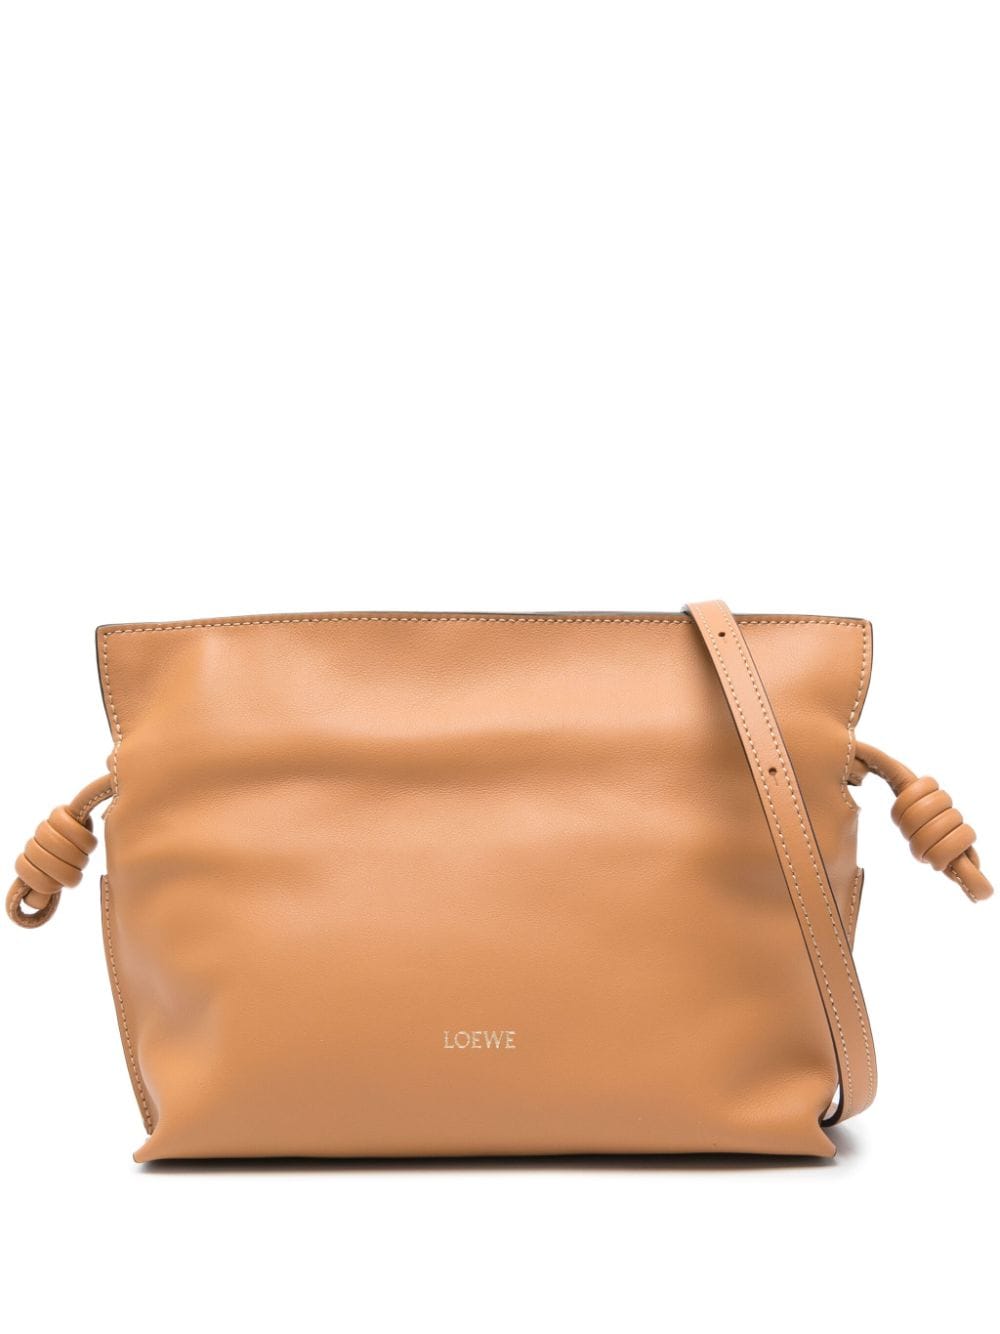 Loewe Flamenco Leather Crossbody Bag In Brown